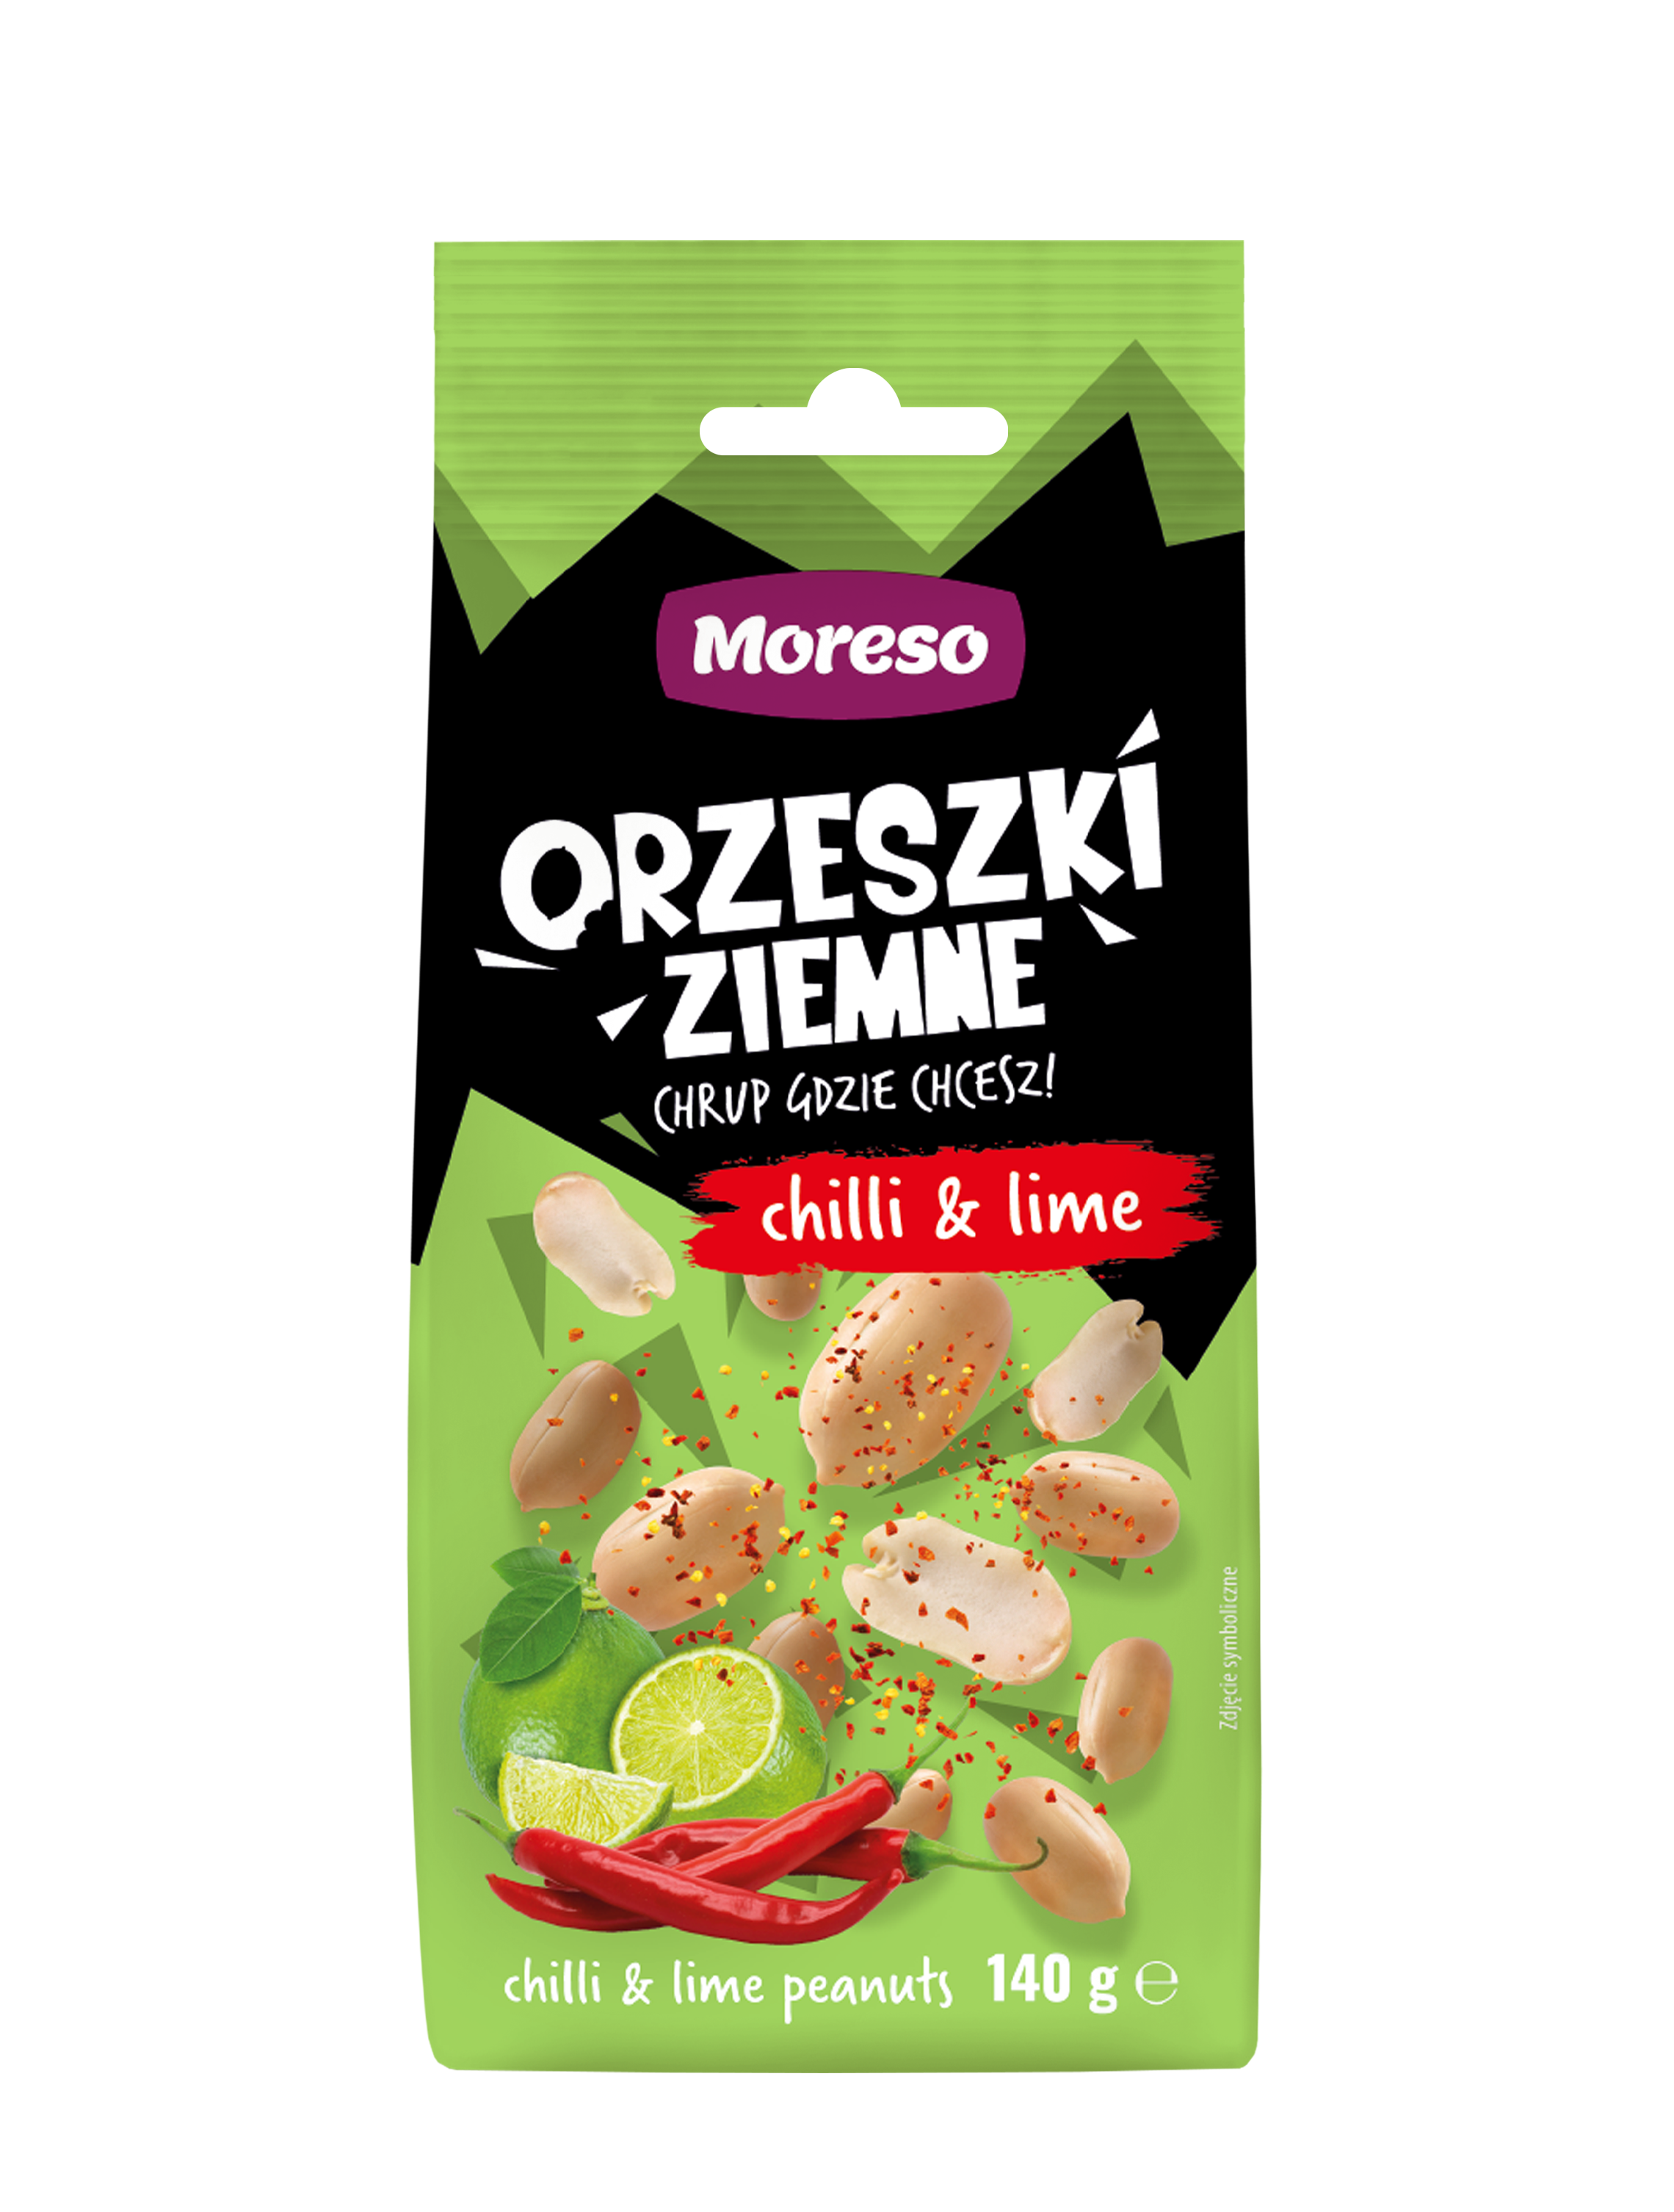 Zobacz ORZESZKI ZIEMNE CHILLI&LIME 140g na Moreso.pl!